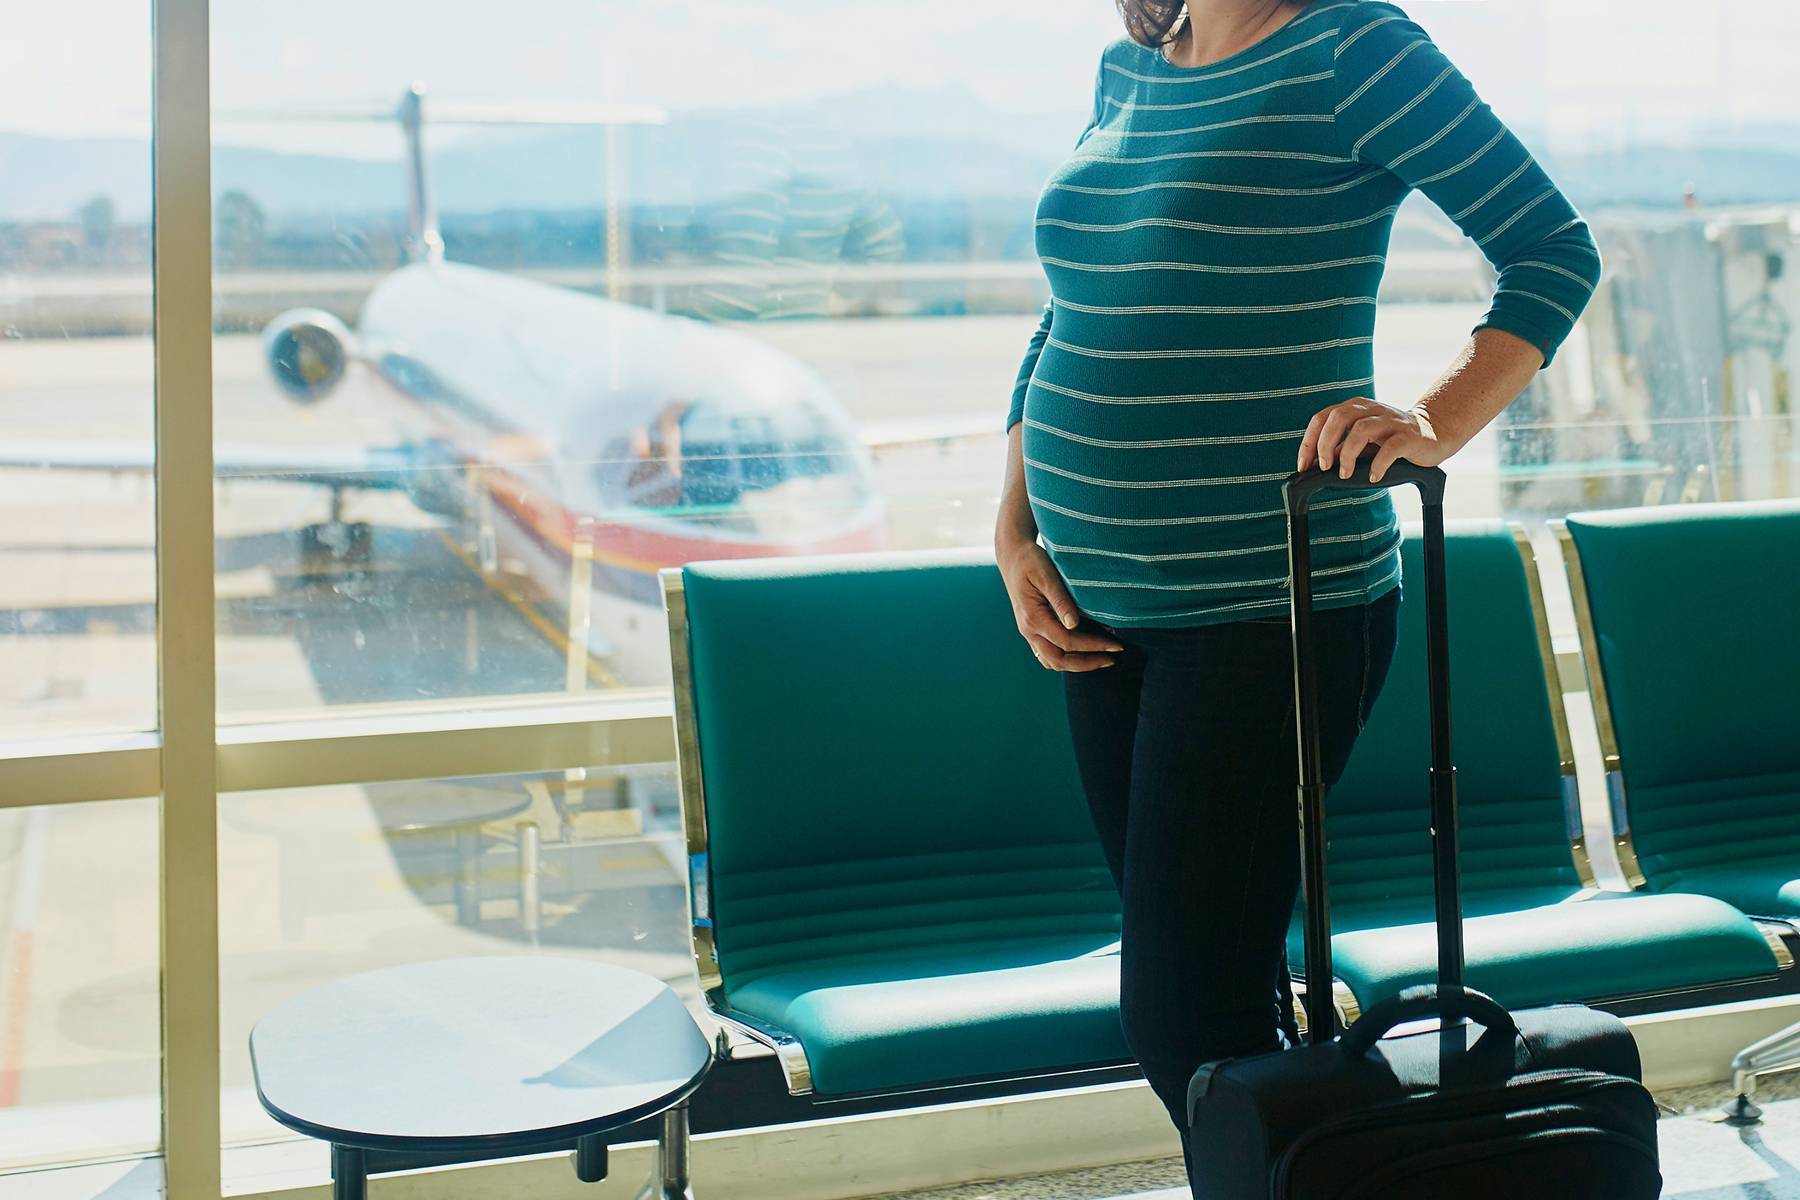 Перелет во время беременности на разных сроках. можно ли беременным летать на самолетах? :: syl.ru